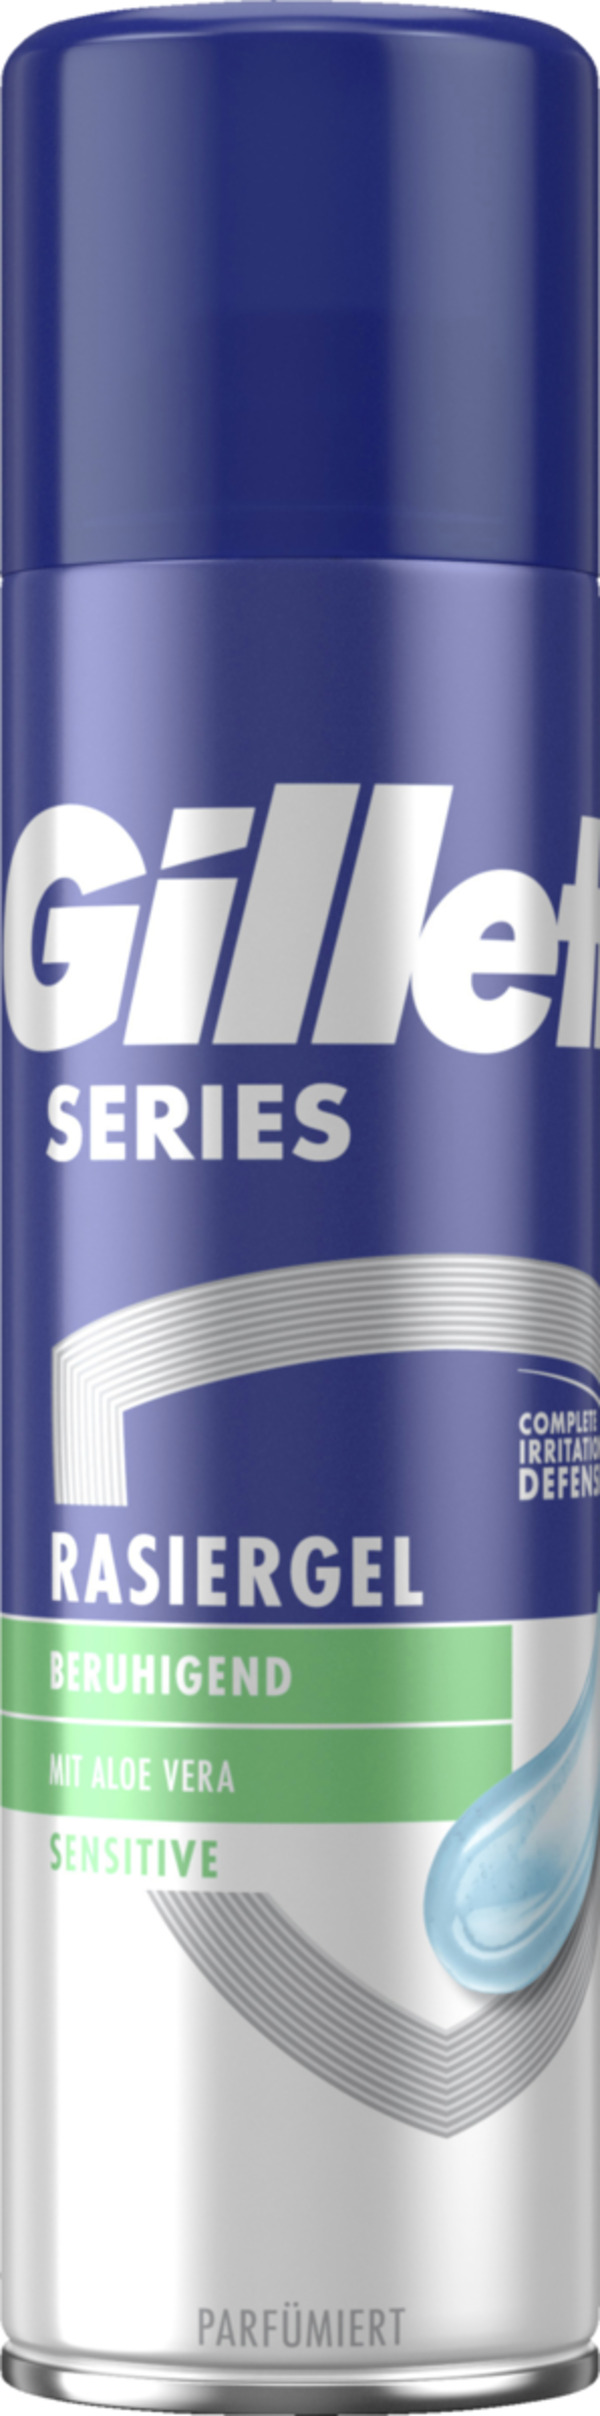 Bild 1 von Gillette Series Rasiergel Sensitive